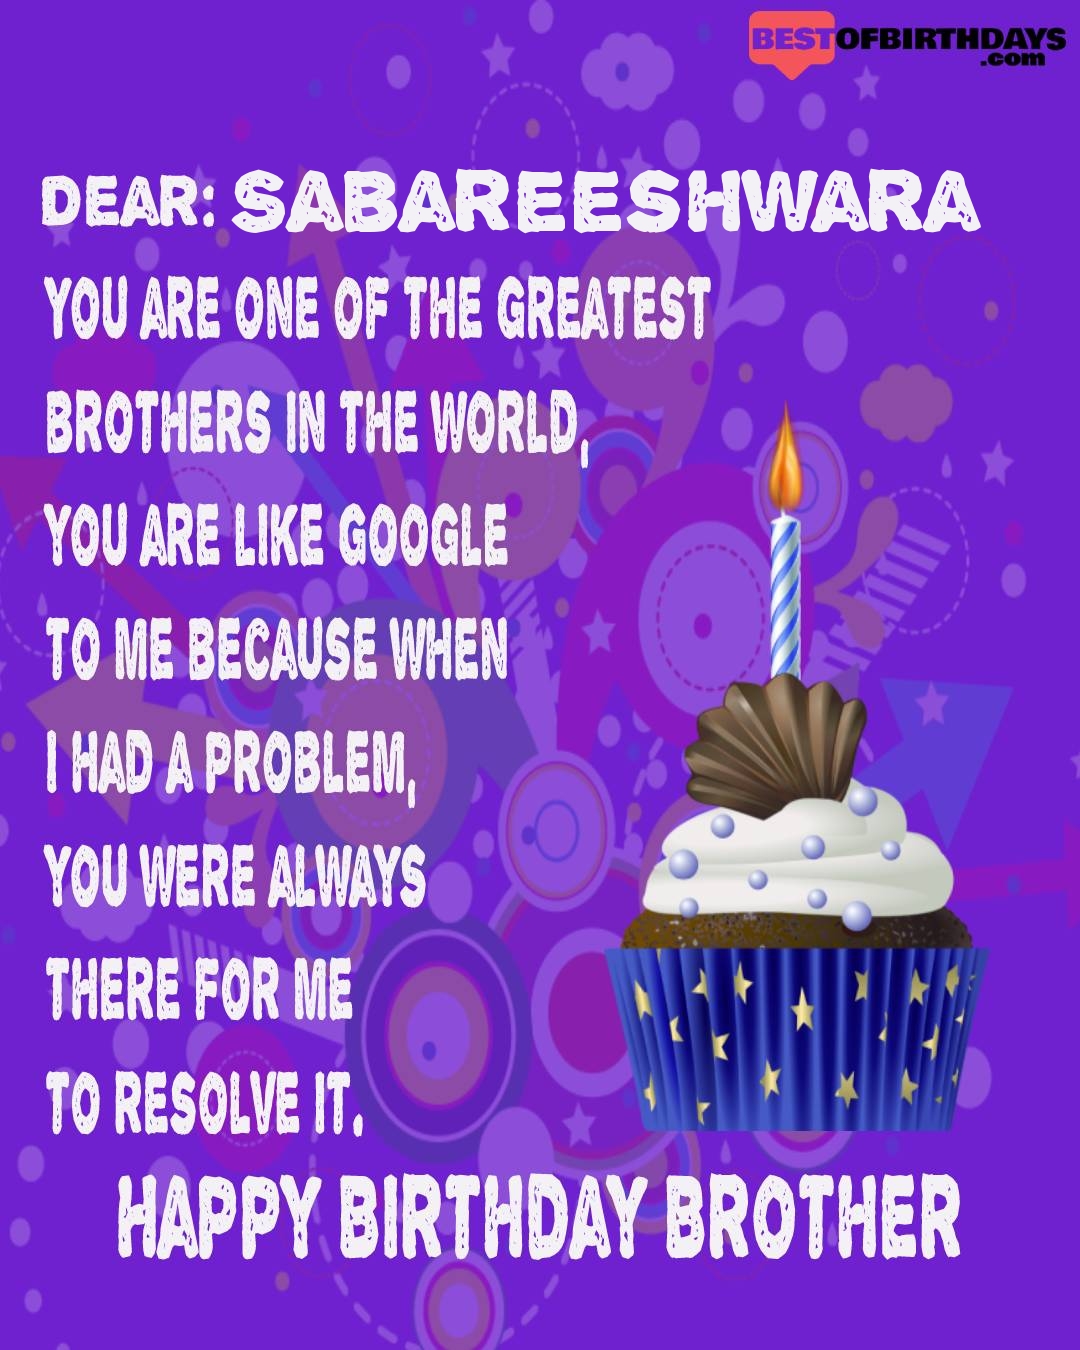 Happy birthday sabareeshwara bhai brother bro